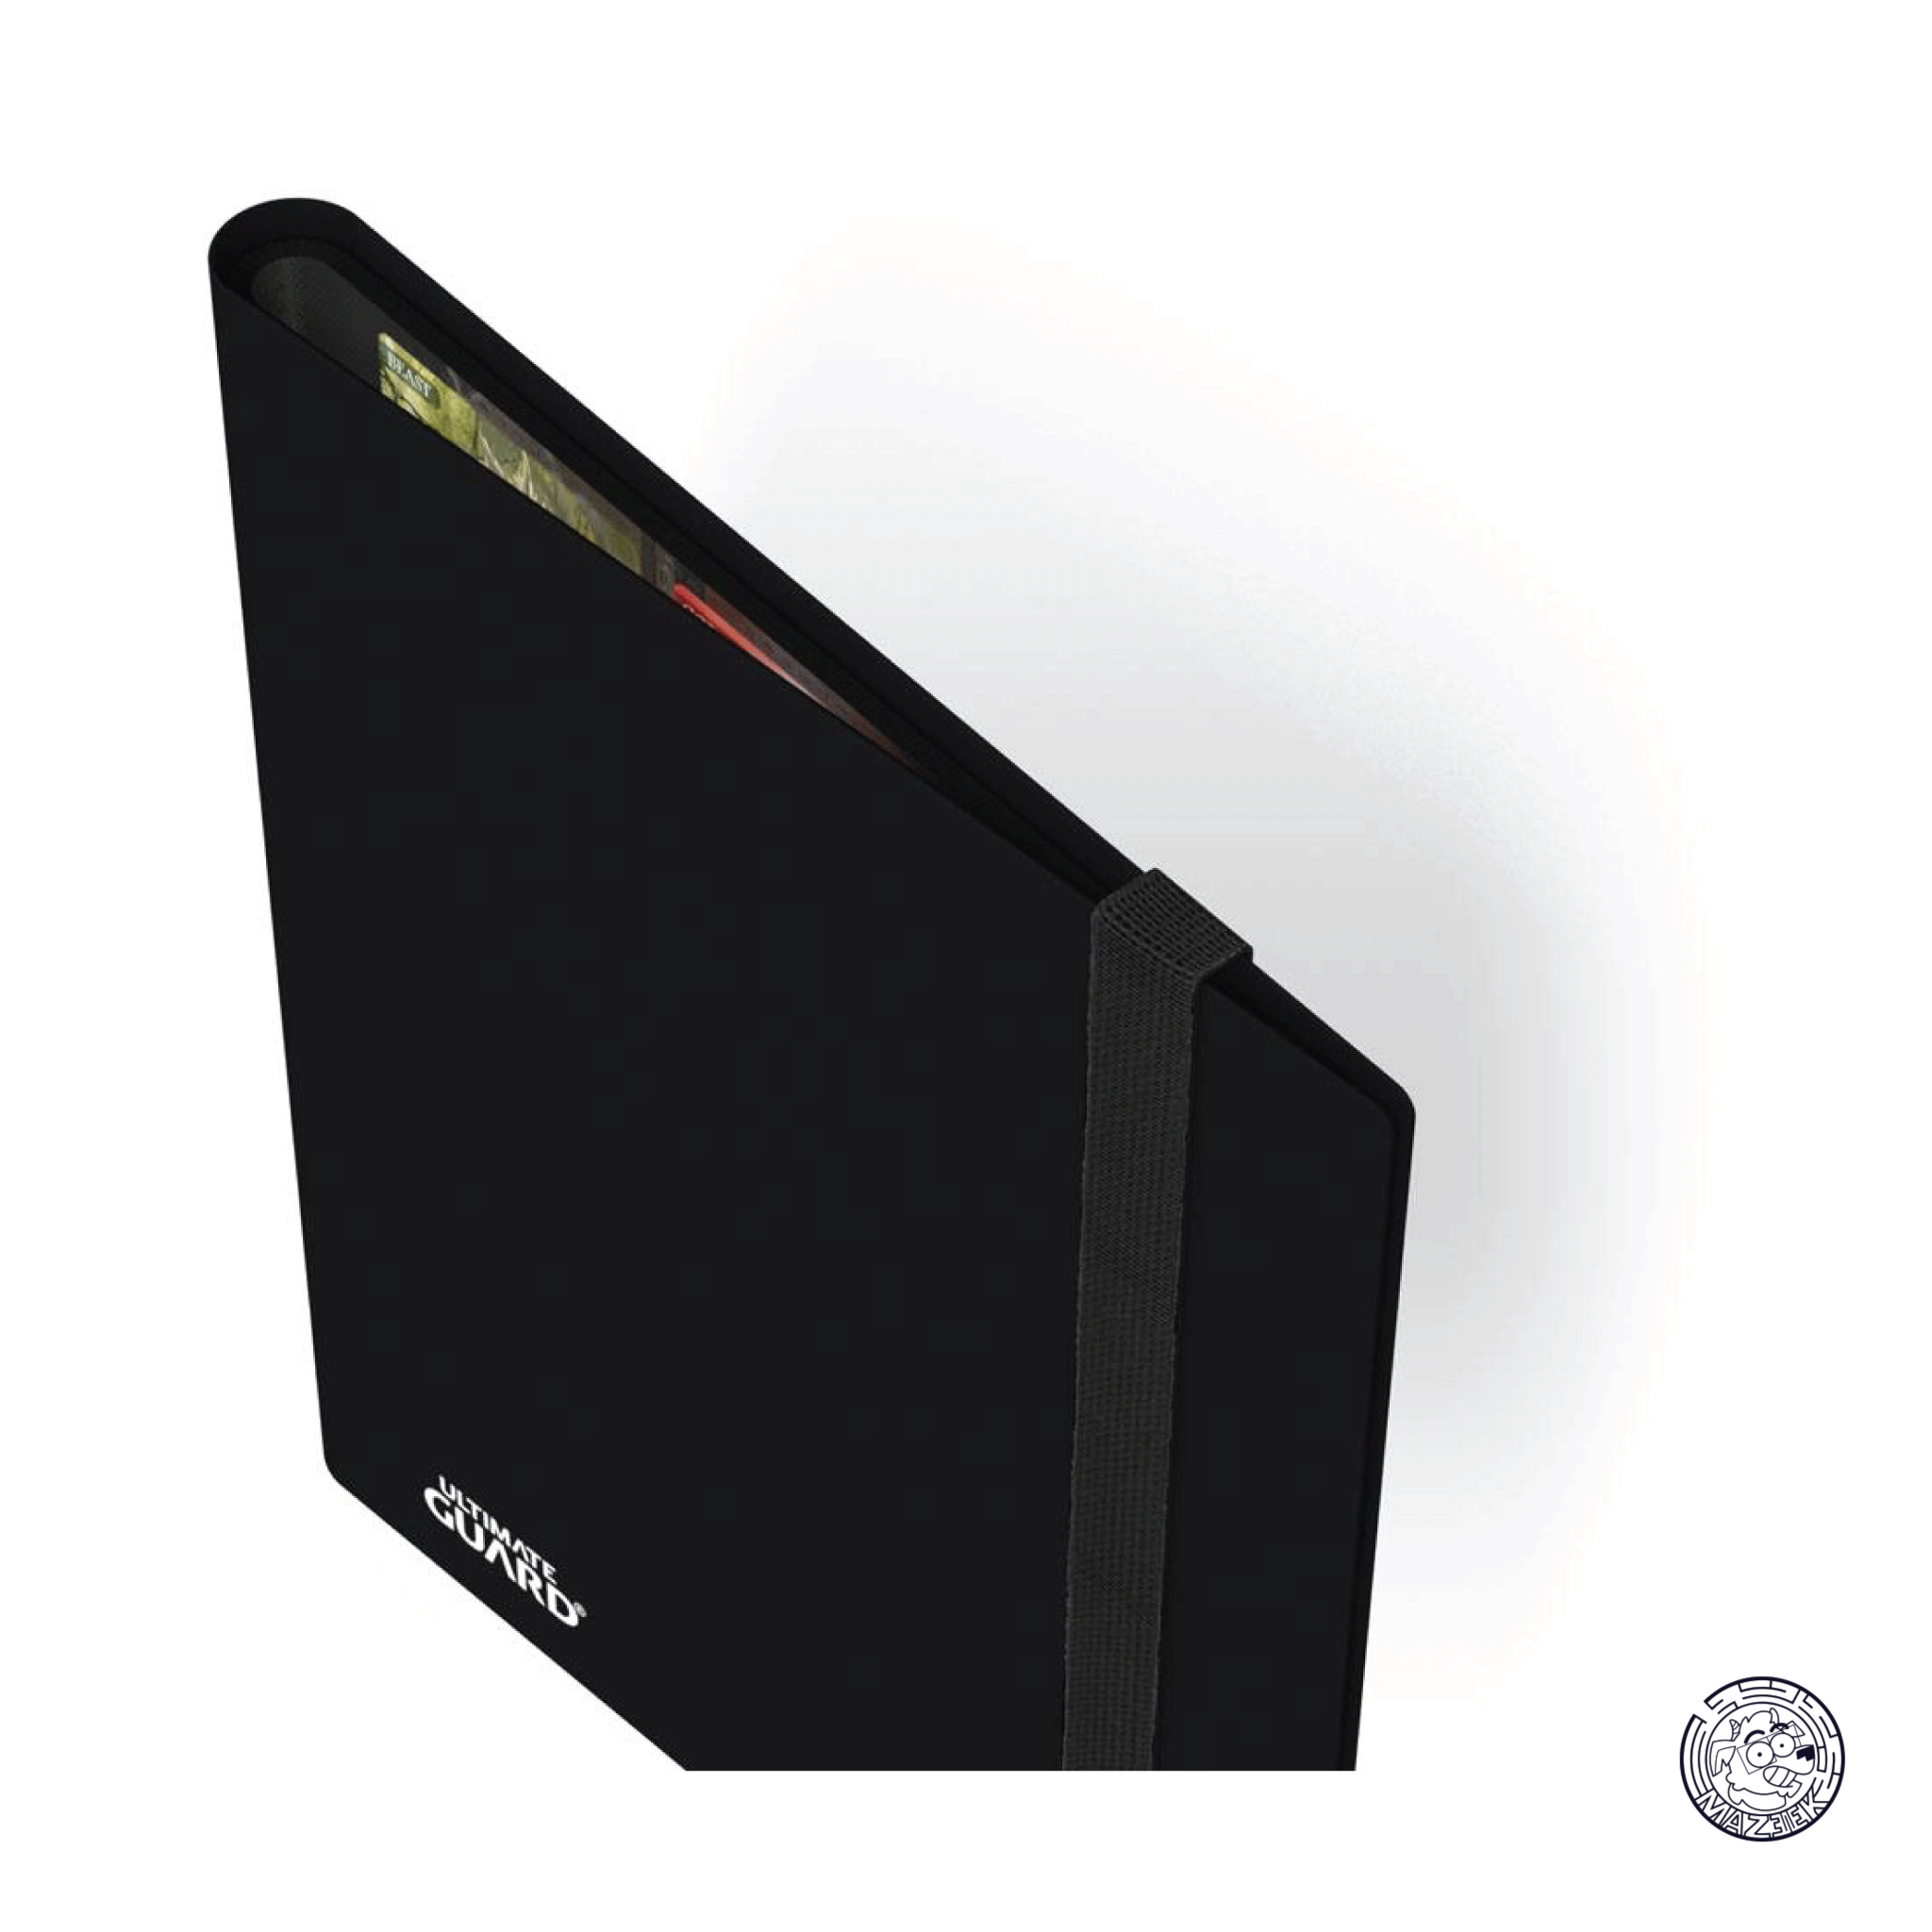 Ultimate Guard - Flexxfolio 360 - 18-Pocket (Black)